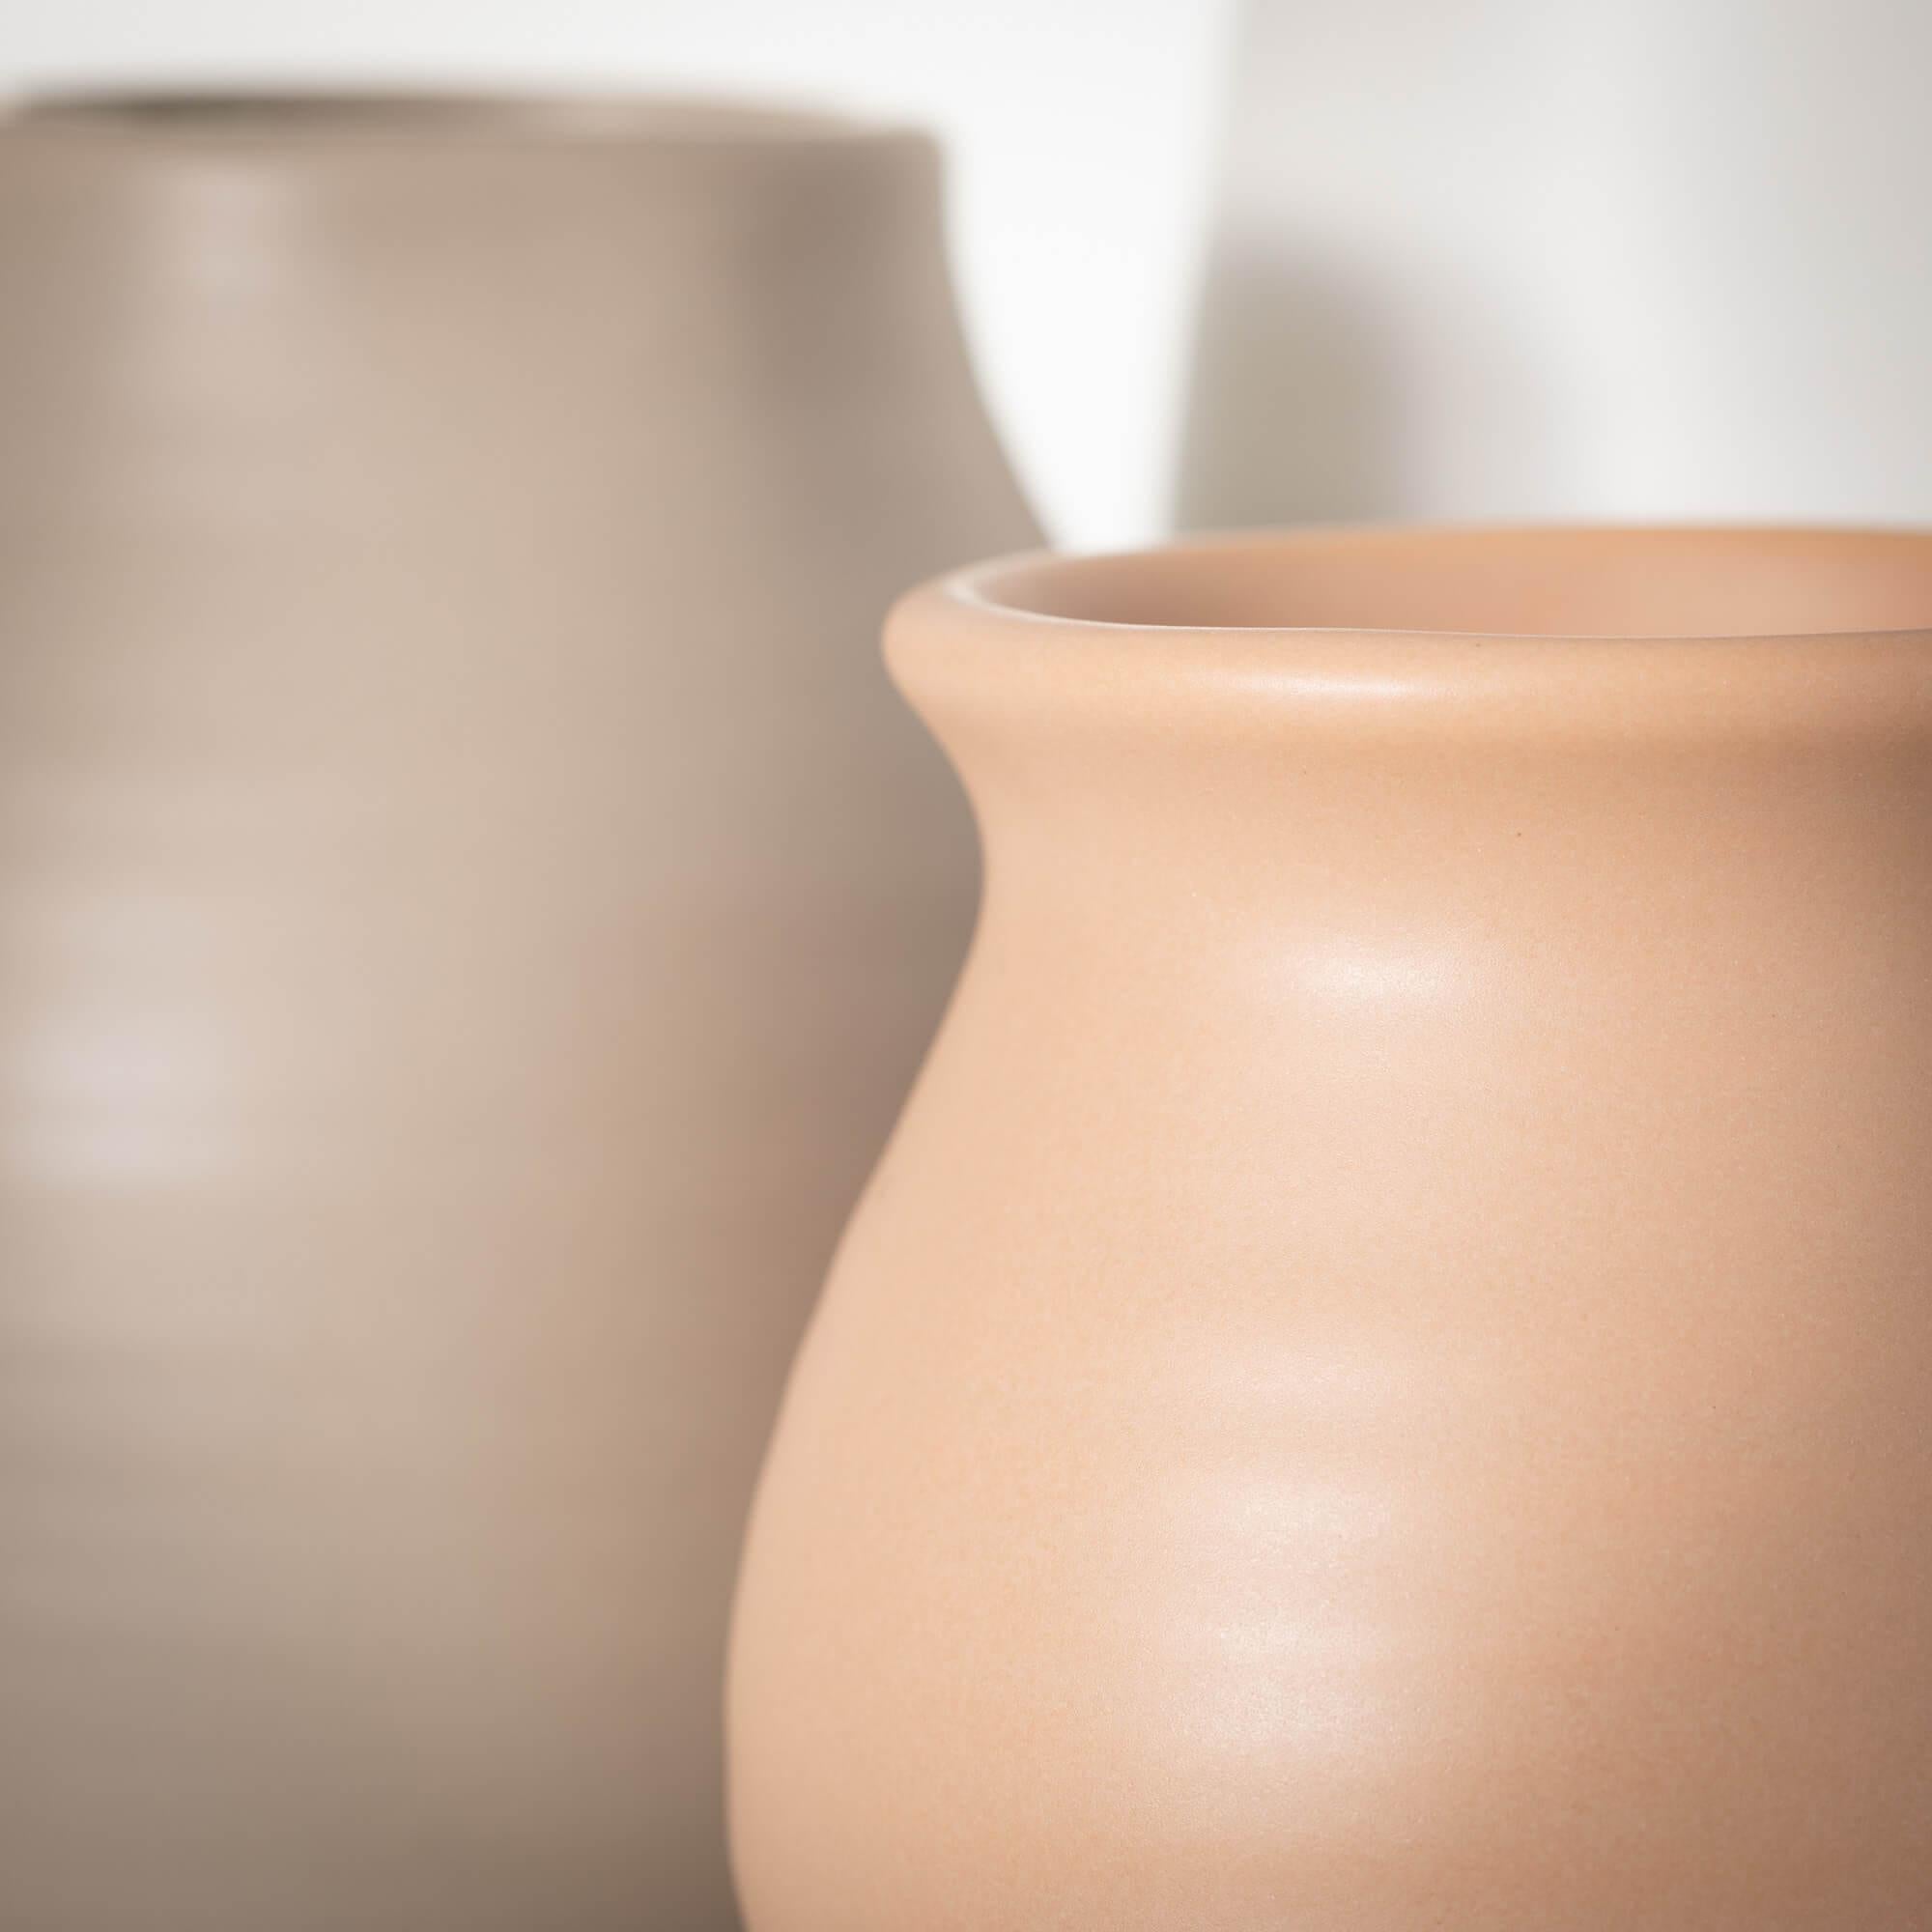 Colored Ceramic Vase - 5.5"H